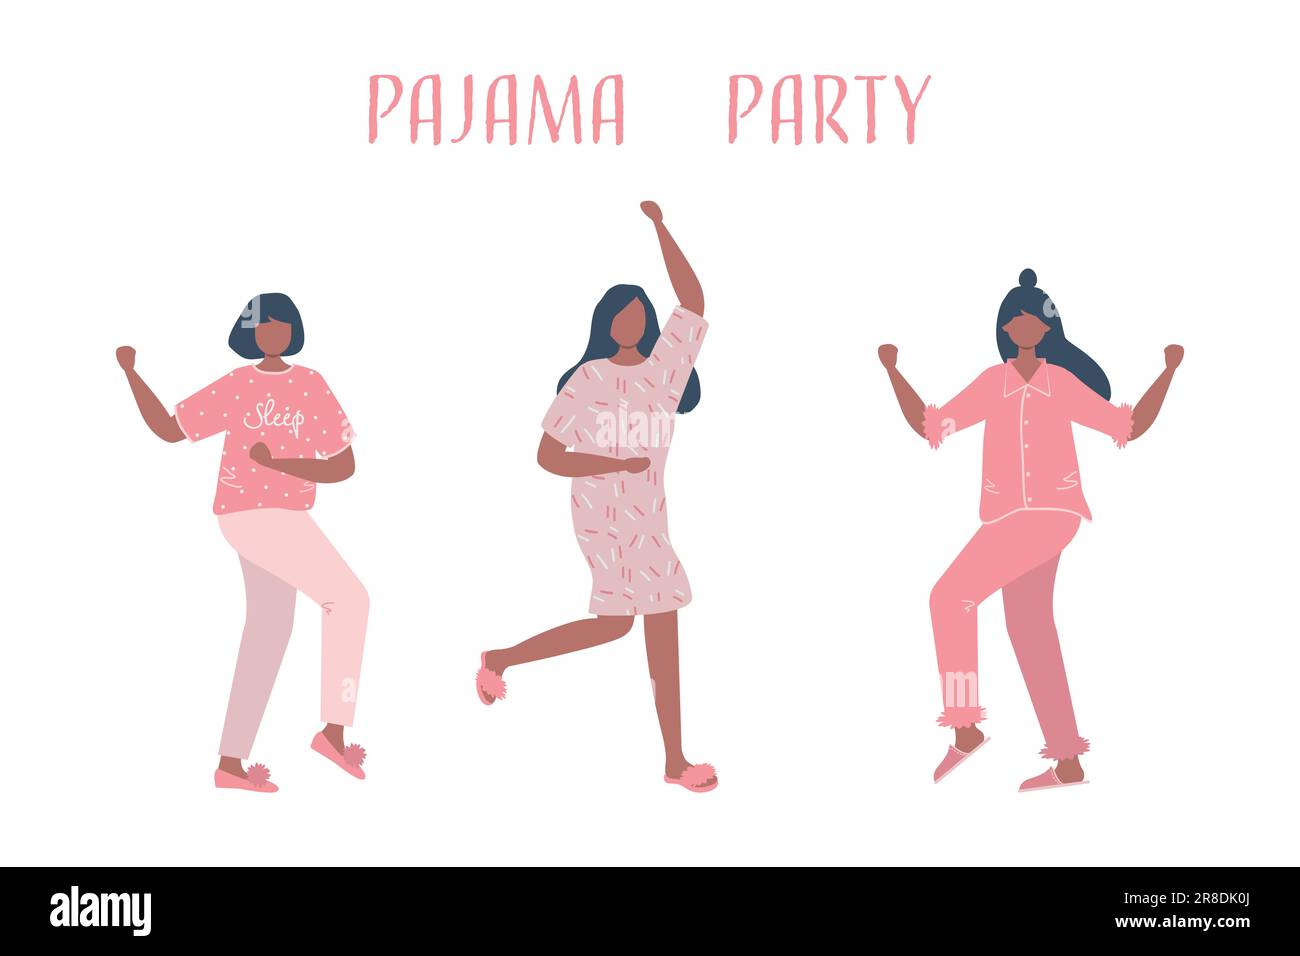 Festa pajama. Tre giovani donne in pigiama rosa stanno ballando. Festa degli schiumieri. Illustrazione vettoriale Illustrazione Vettoriale